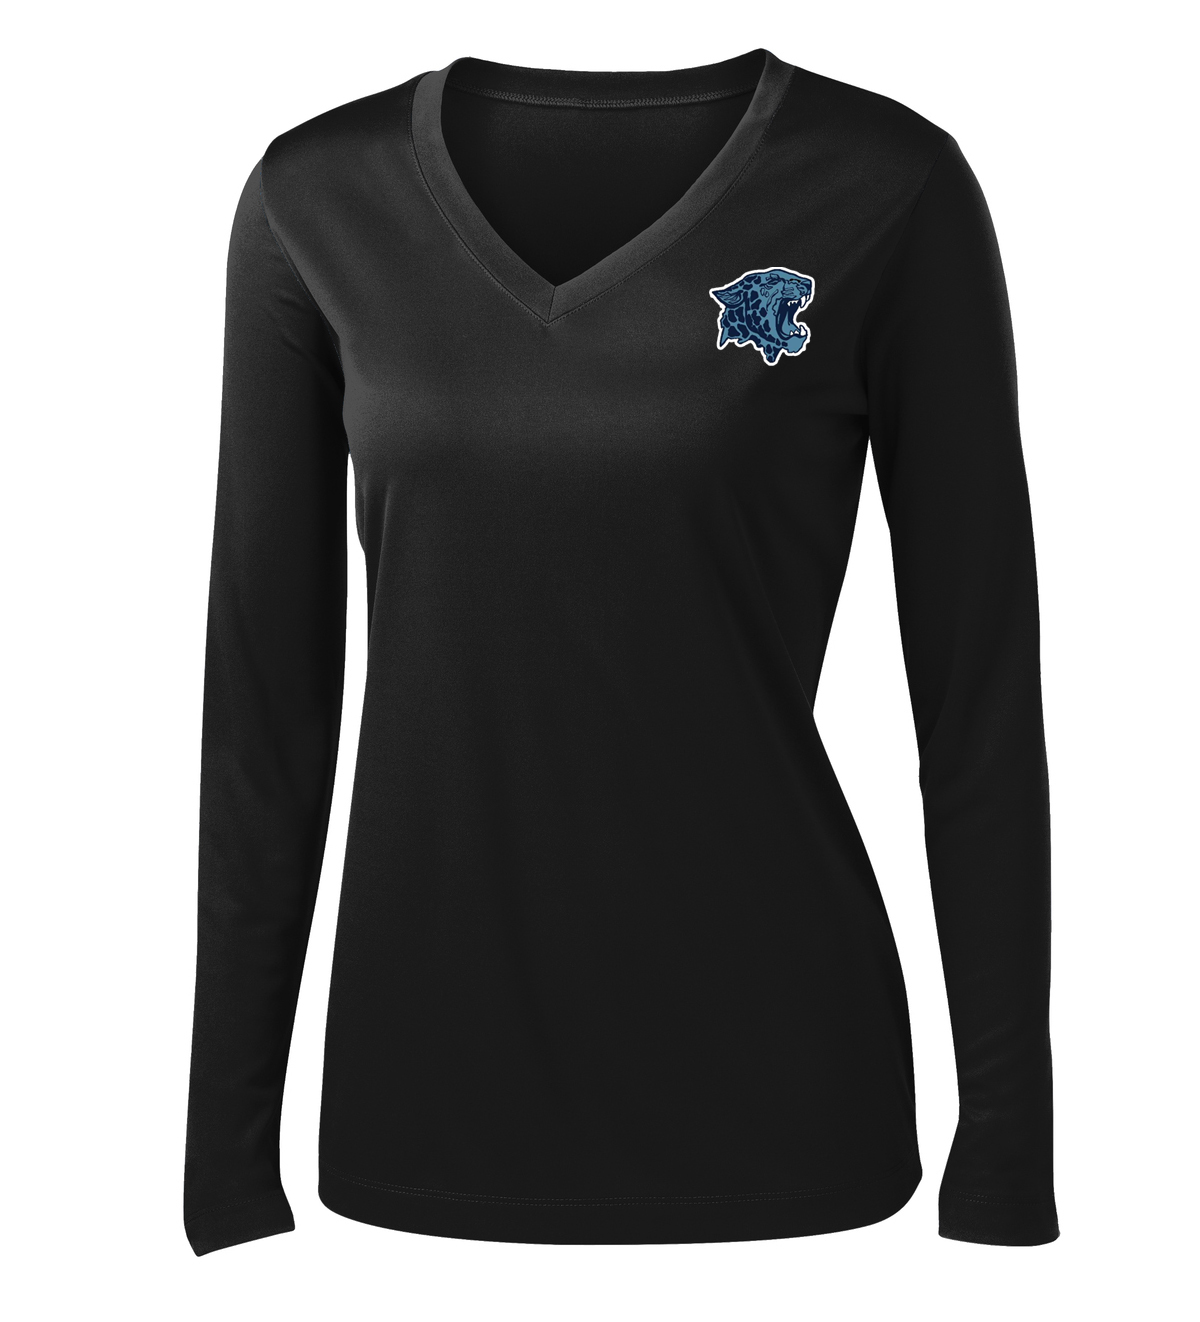 Louisville High School Lacrosse Women's Long Sleeve Performance Shirt